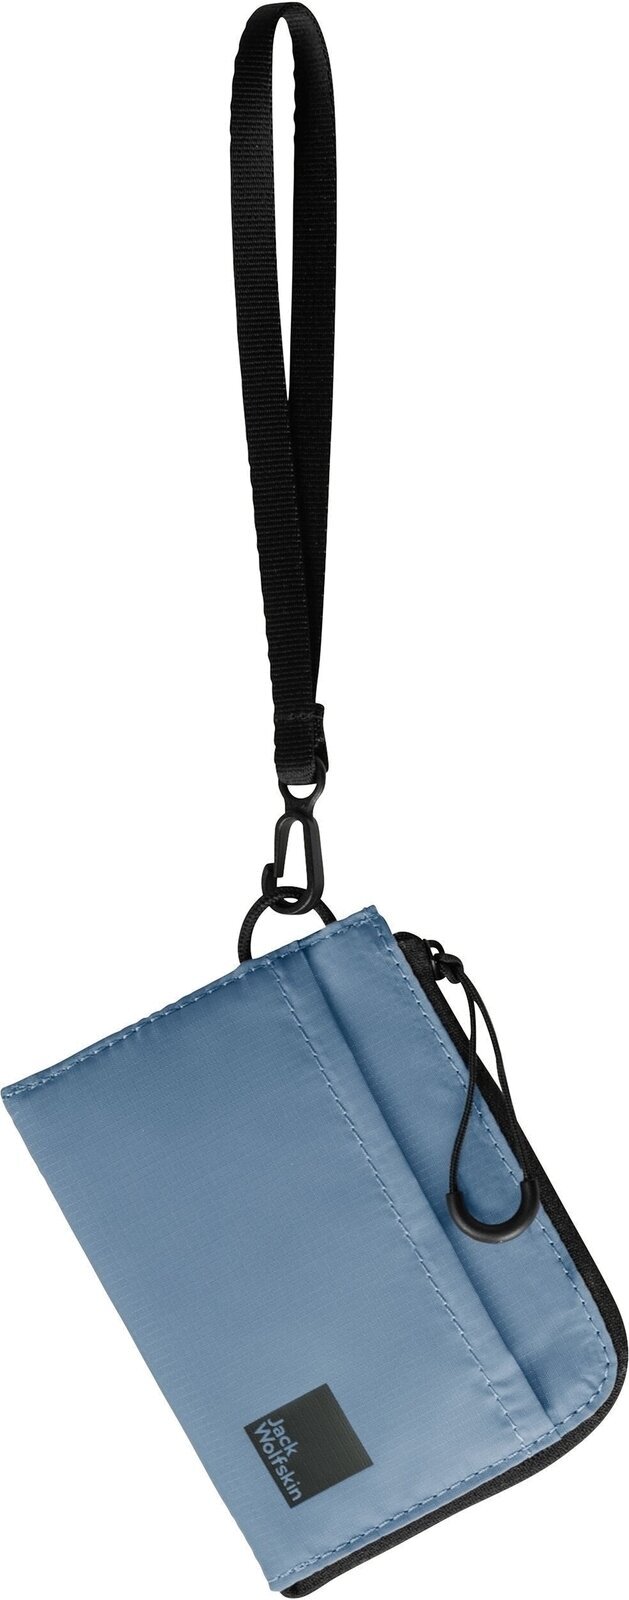 Wallet, Crossbody Bag Jack Wolfskin Wandermood Wallet Elemental Blue Wallet